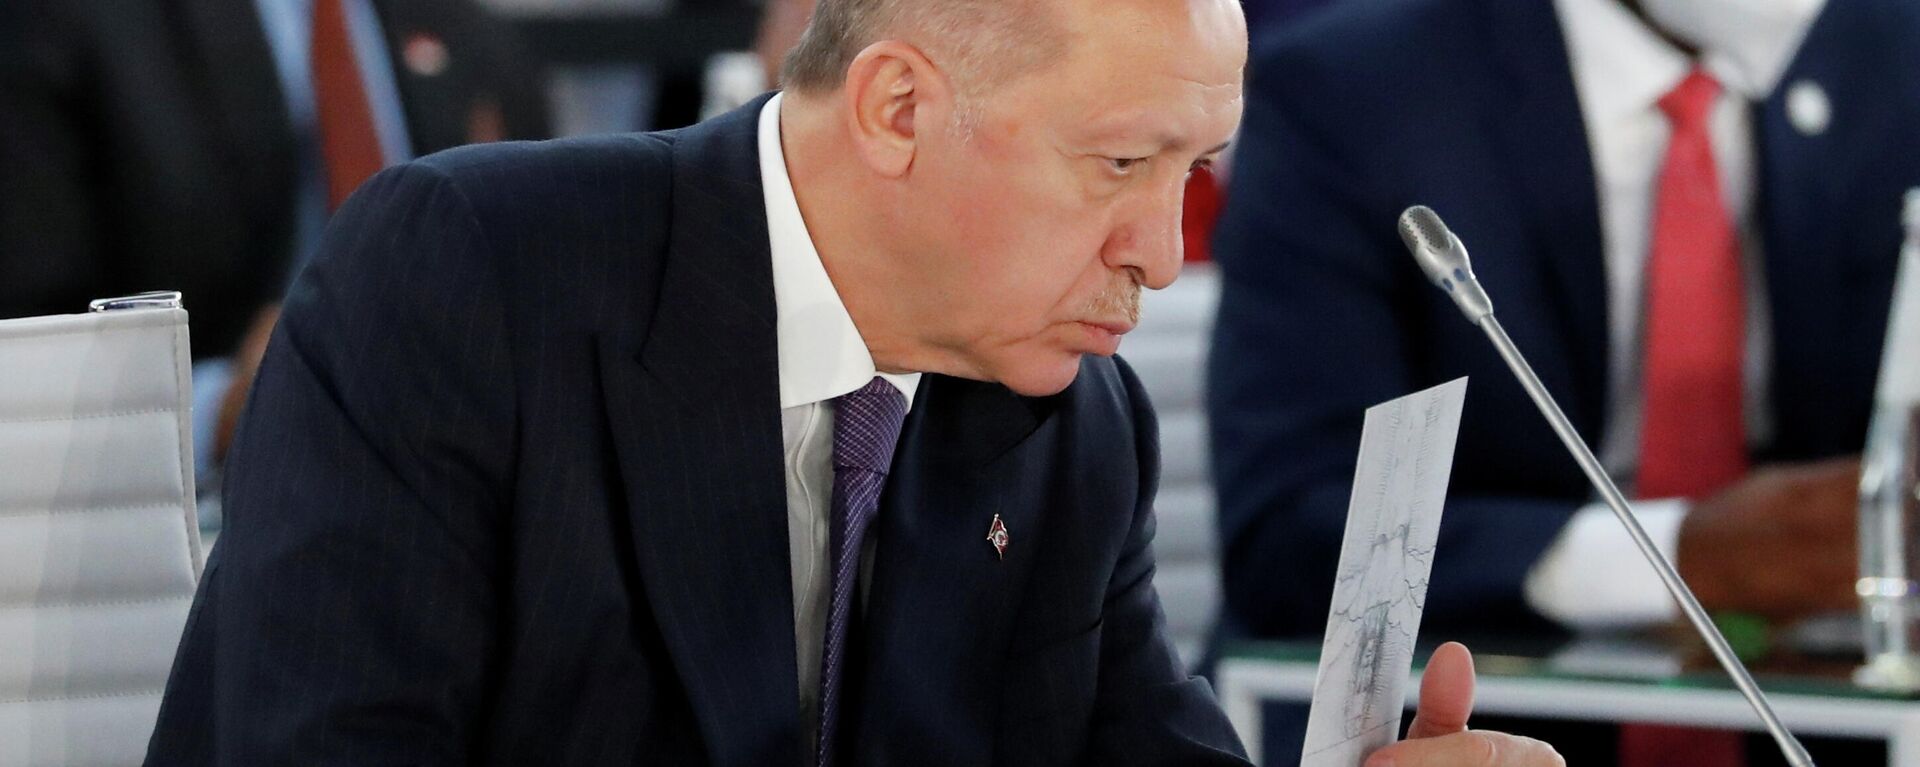 El presidente de Turquía, Recep Tayyip Erdogan - Sputnik Mundo, 1920, 18.11.2021